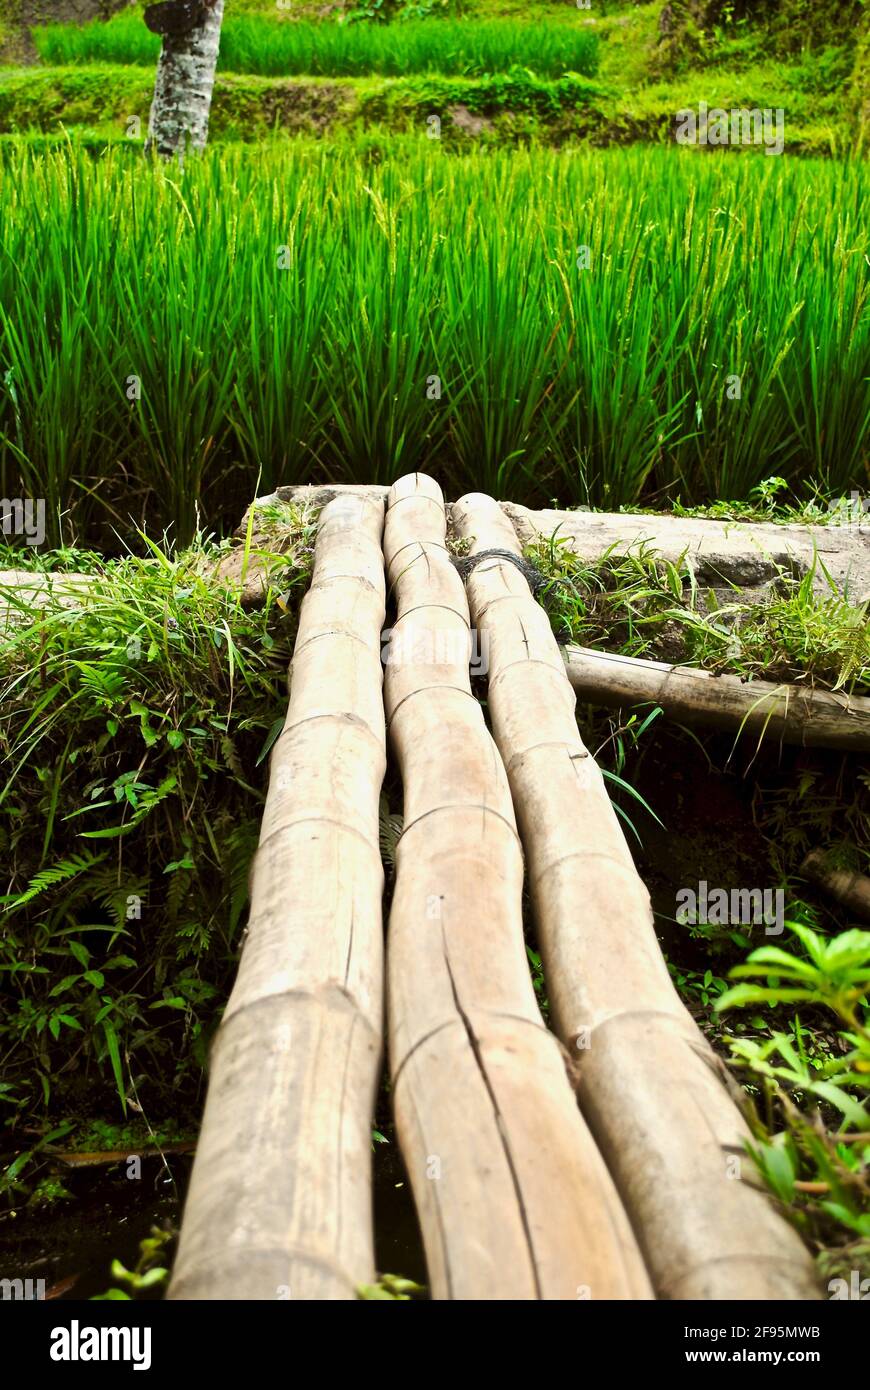 Bambusbrücke im Reisfeld in Bali, Indonesien. Drei Bambusstämme bilden eine kleine Fußbrücke über das Wasser zu lebendigen grünen Reispflanzen. Stockfoto